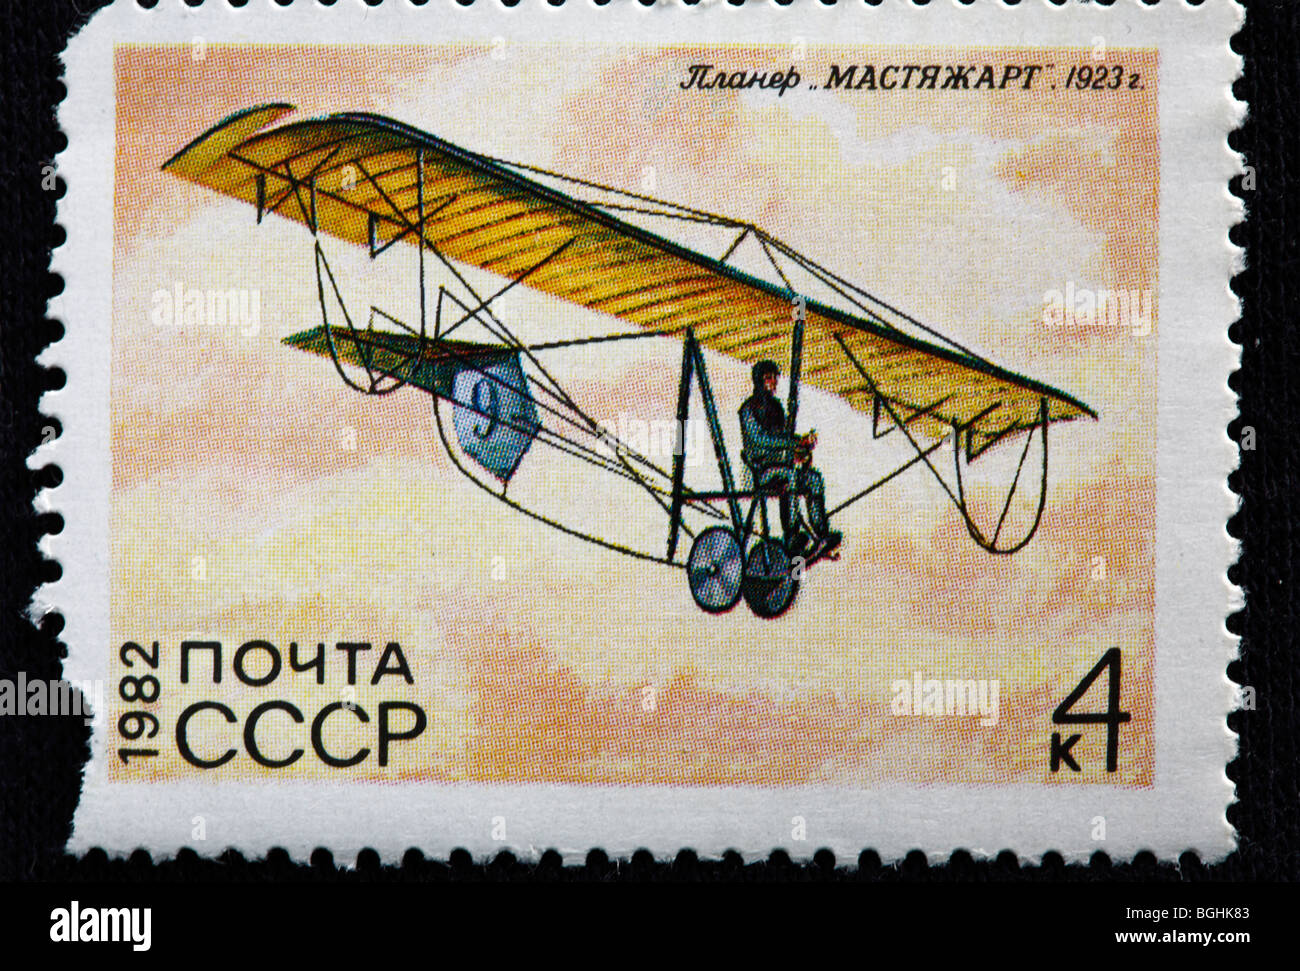 Geschichte der Luftfahrt, russische Segelflugzeug "Mastyazhart" (1923), Briefmarke, UdSSR, 1982 Stockfoto